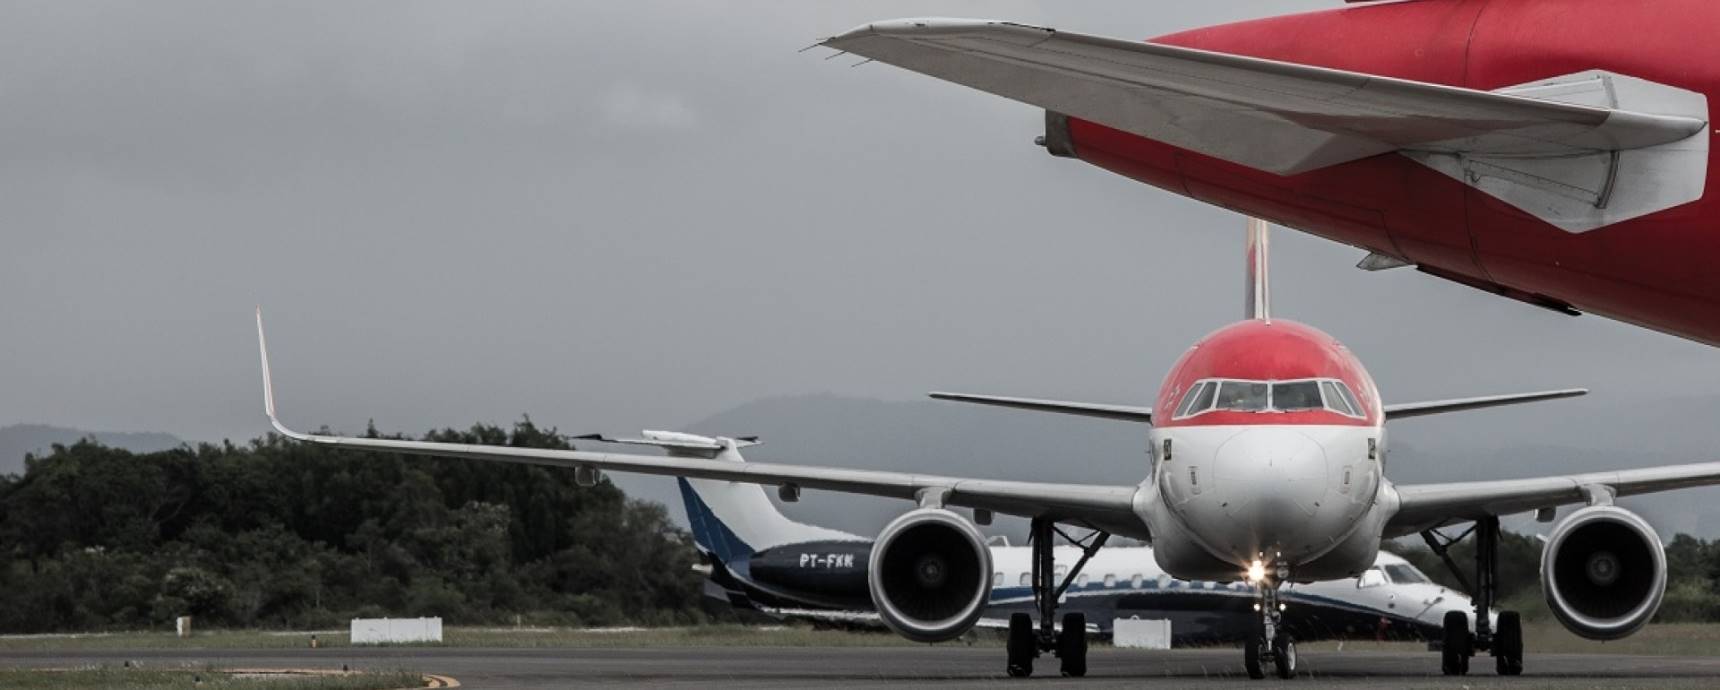 Floripa Airport projeta crescimento de 4% no movimento da próxima temporada no Aeroporto Internacional de Florianópolis